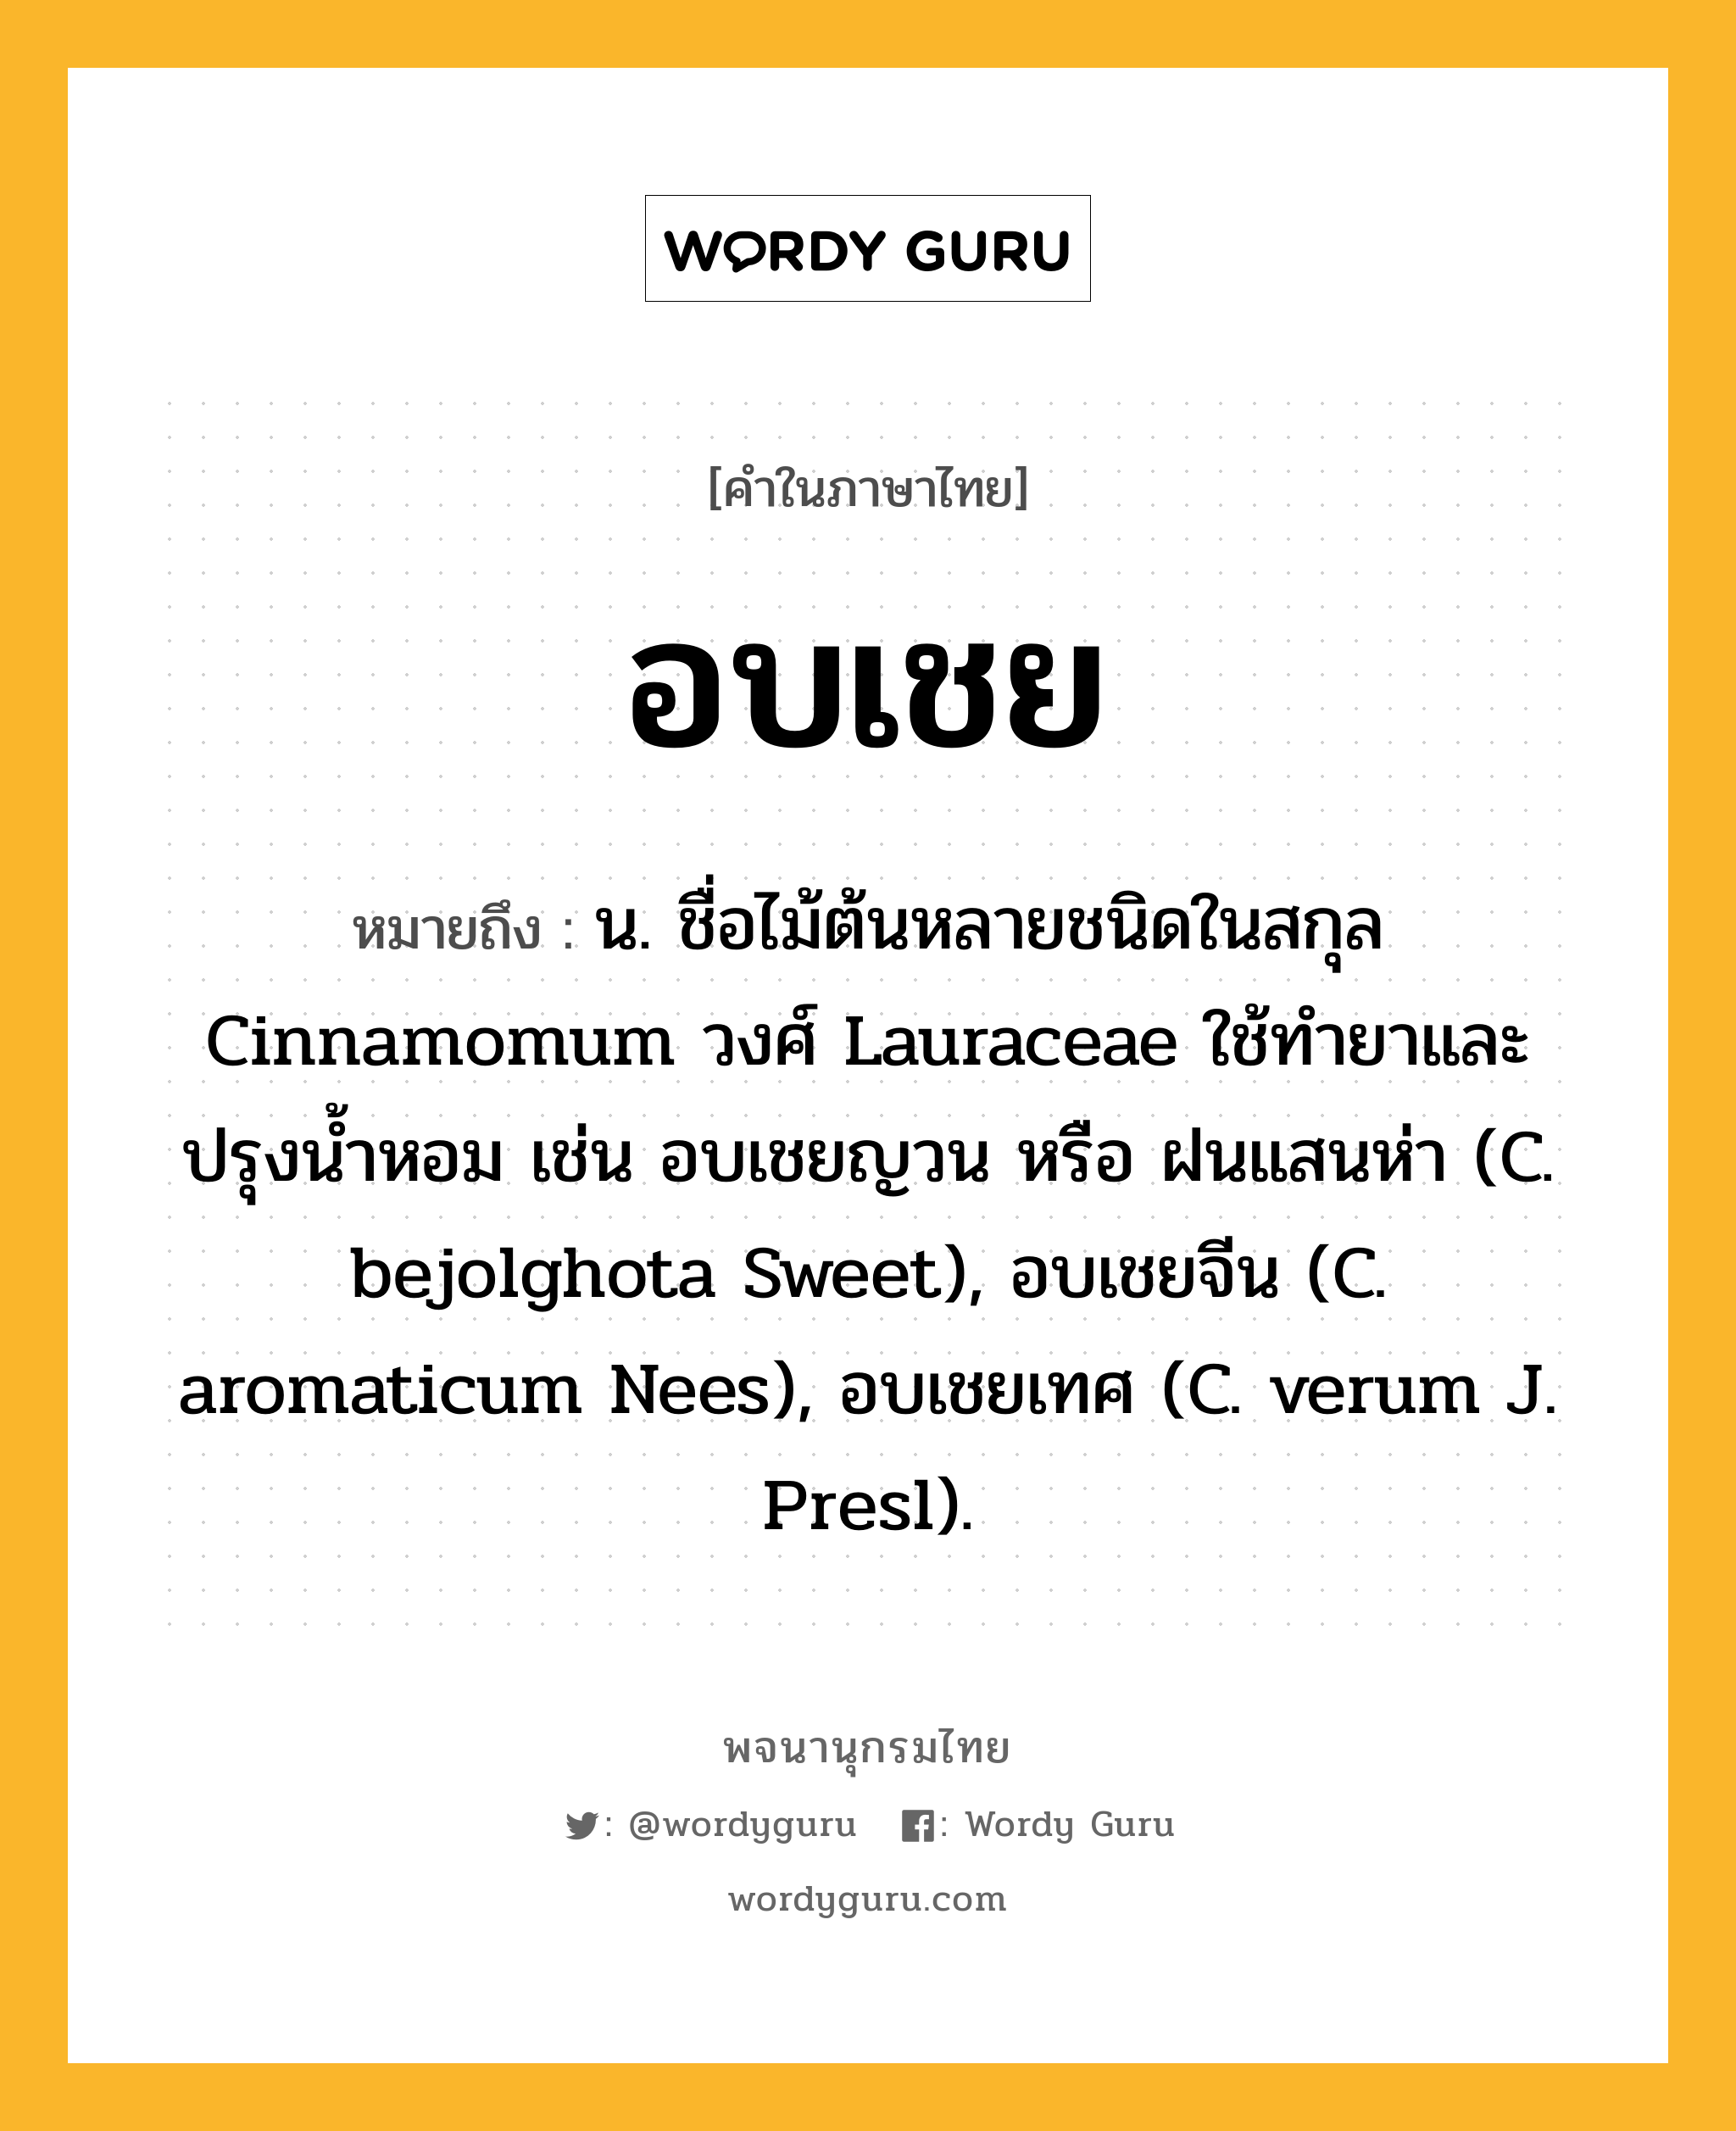 อบเชย ความหมาย หมายถึงอะไร?, คำในภาษาไทย อบเชย หมายถึง น. ชื่อไม้ต้นหลายชนิดในสกุล Cinnamomum วงศ์ Lauraceae ใช้ทํายาและปรุงนํ้าหอม เช่น อบเชยญวน หรือ ฝนแสนห่า (C. bejolghota Sweet), อบเชยจีน (C. aromaticum Nees), อบเชยเทศ (C. verum J. Presl).